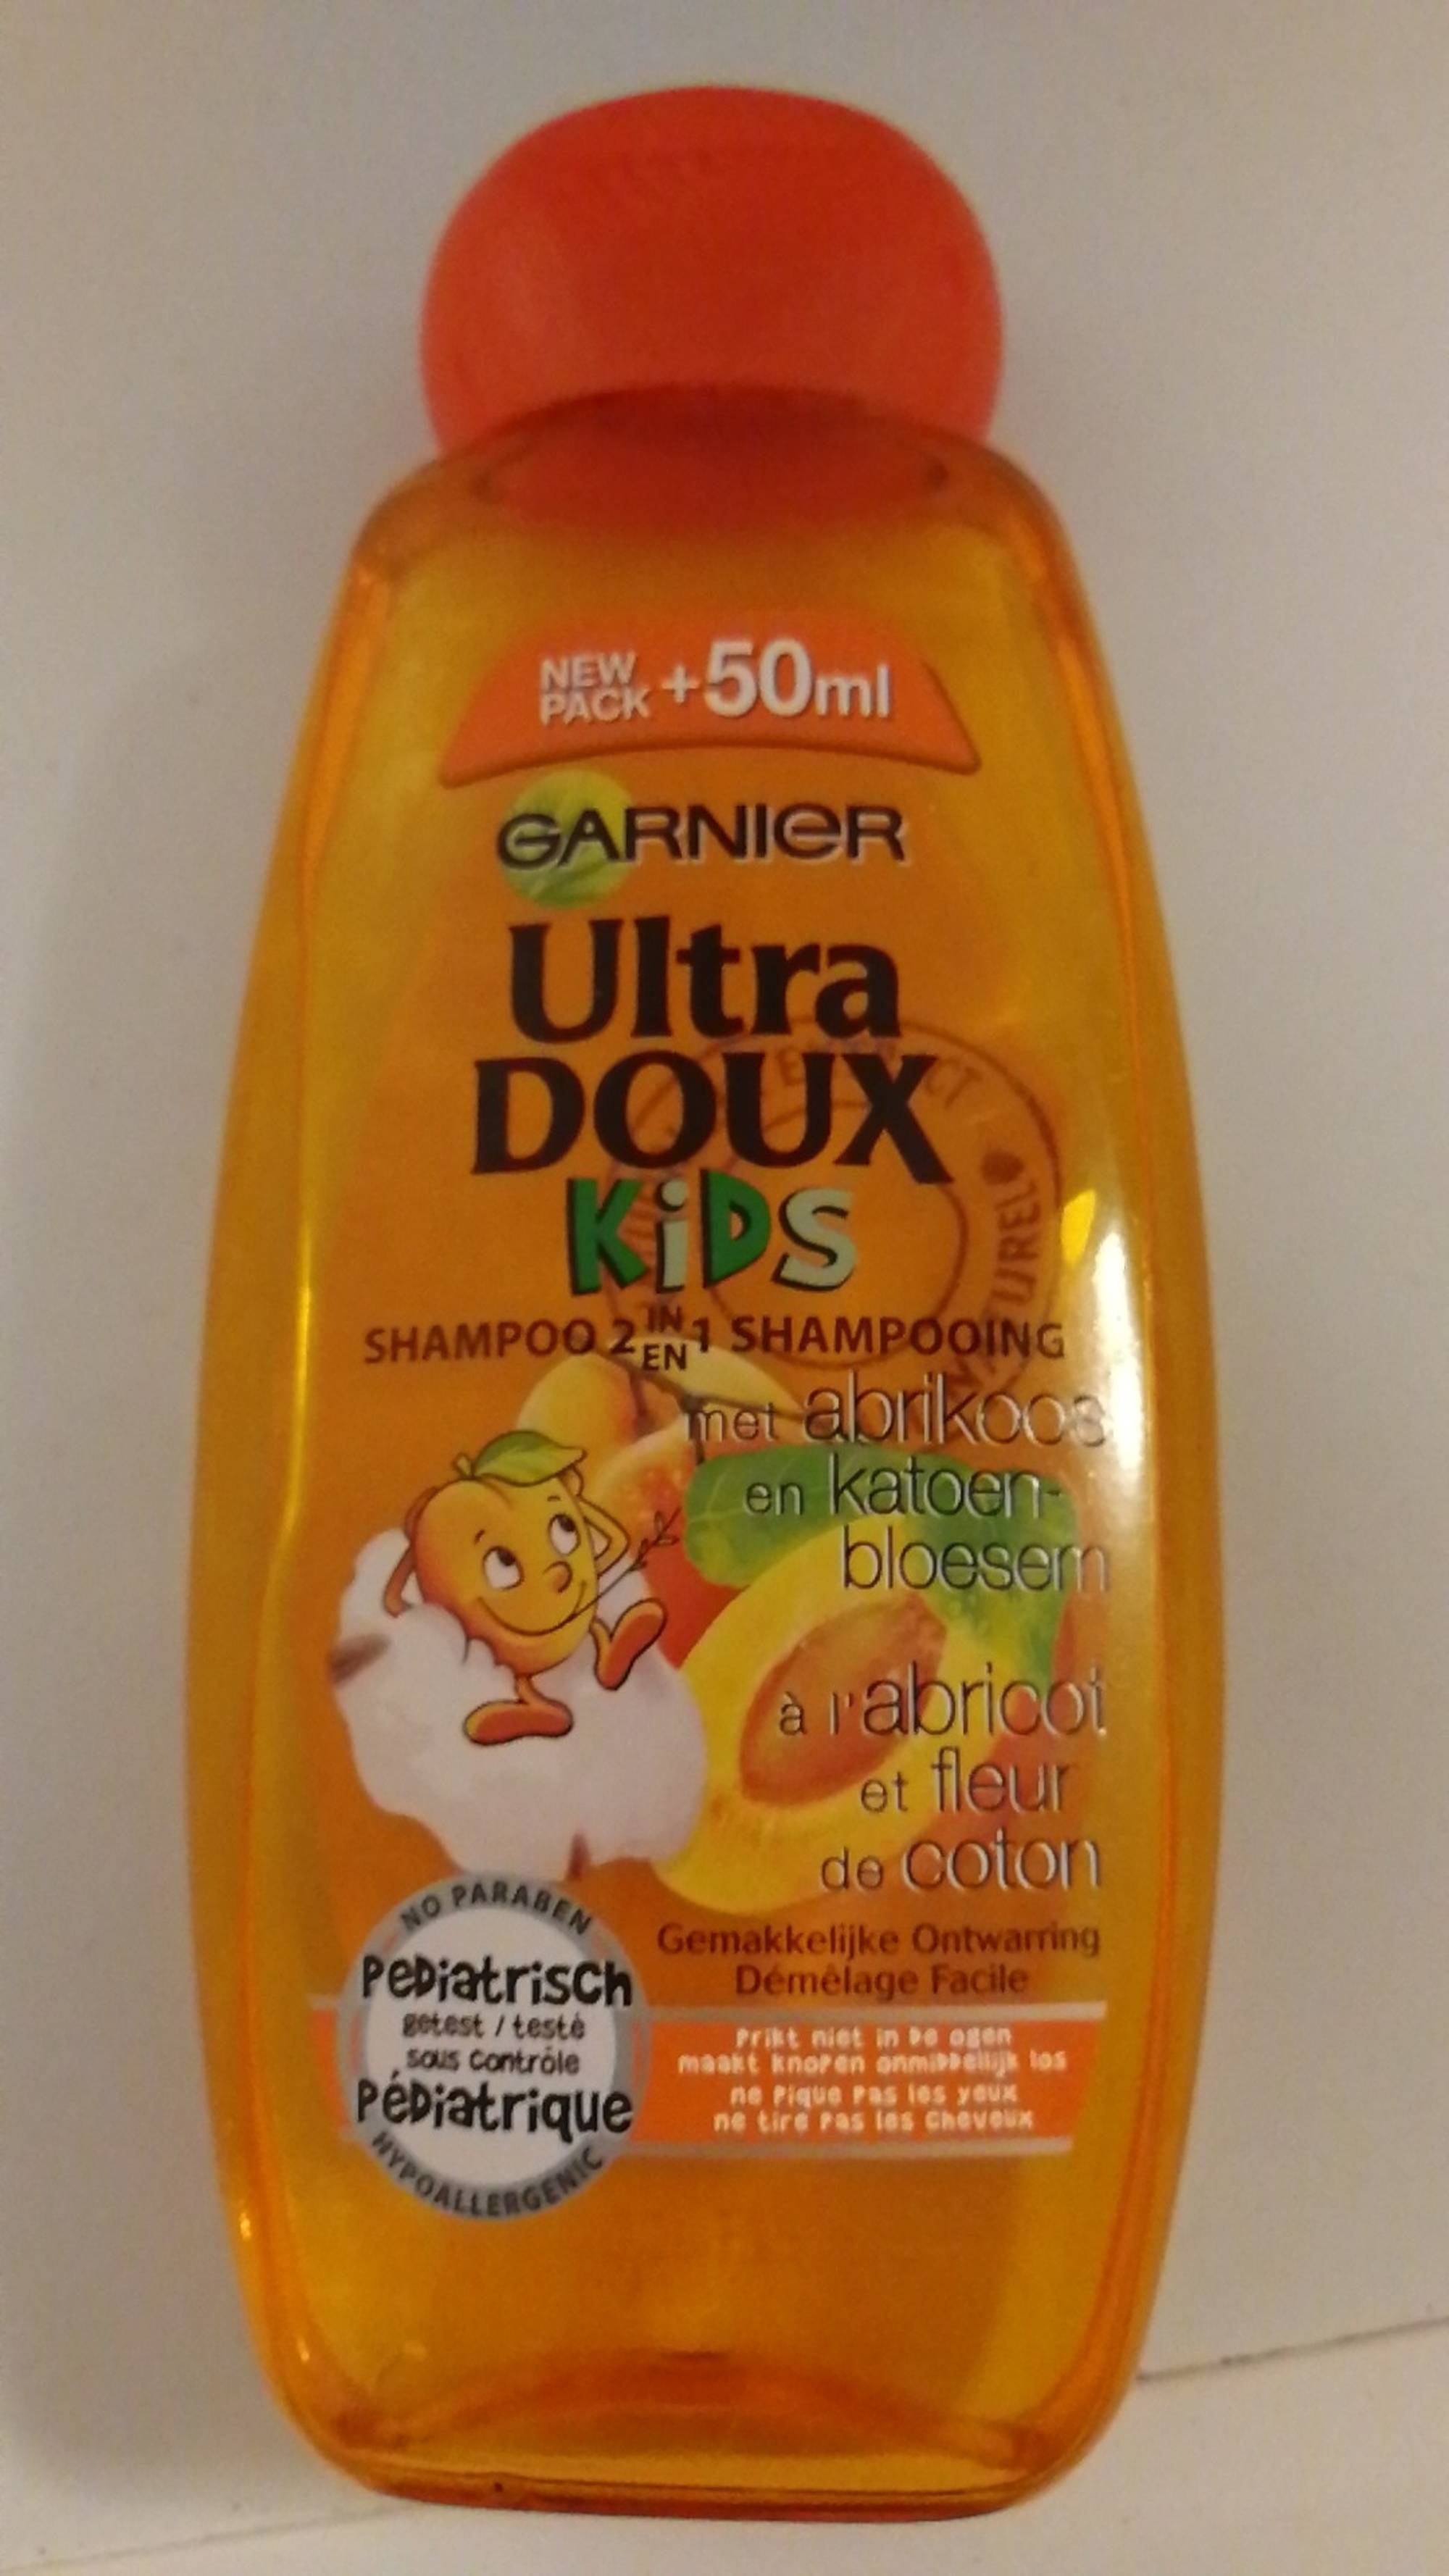 GARNIER - Ultra doux kids - Shampooing 2 en 1